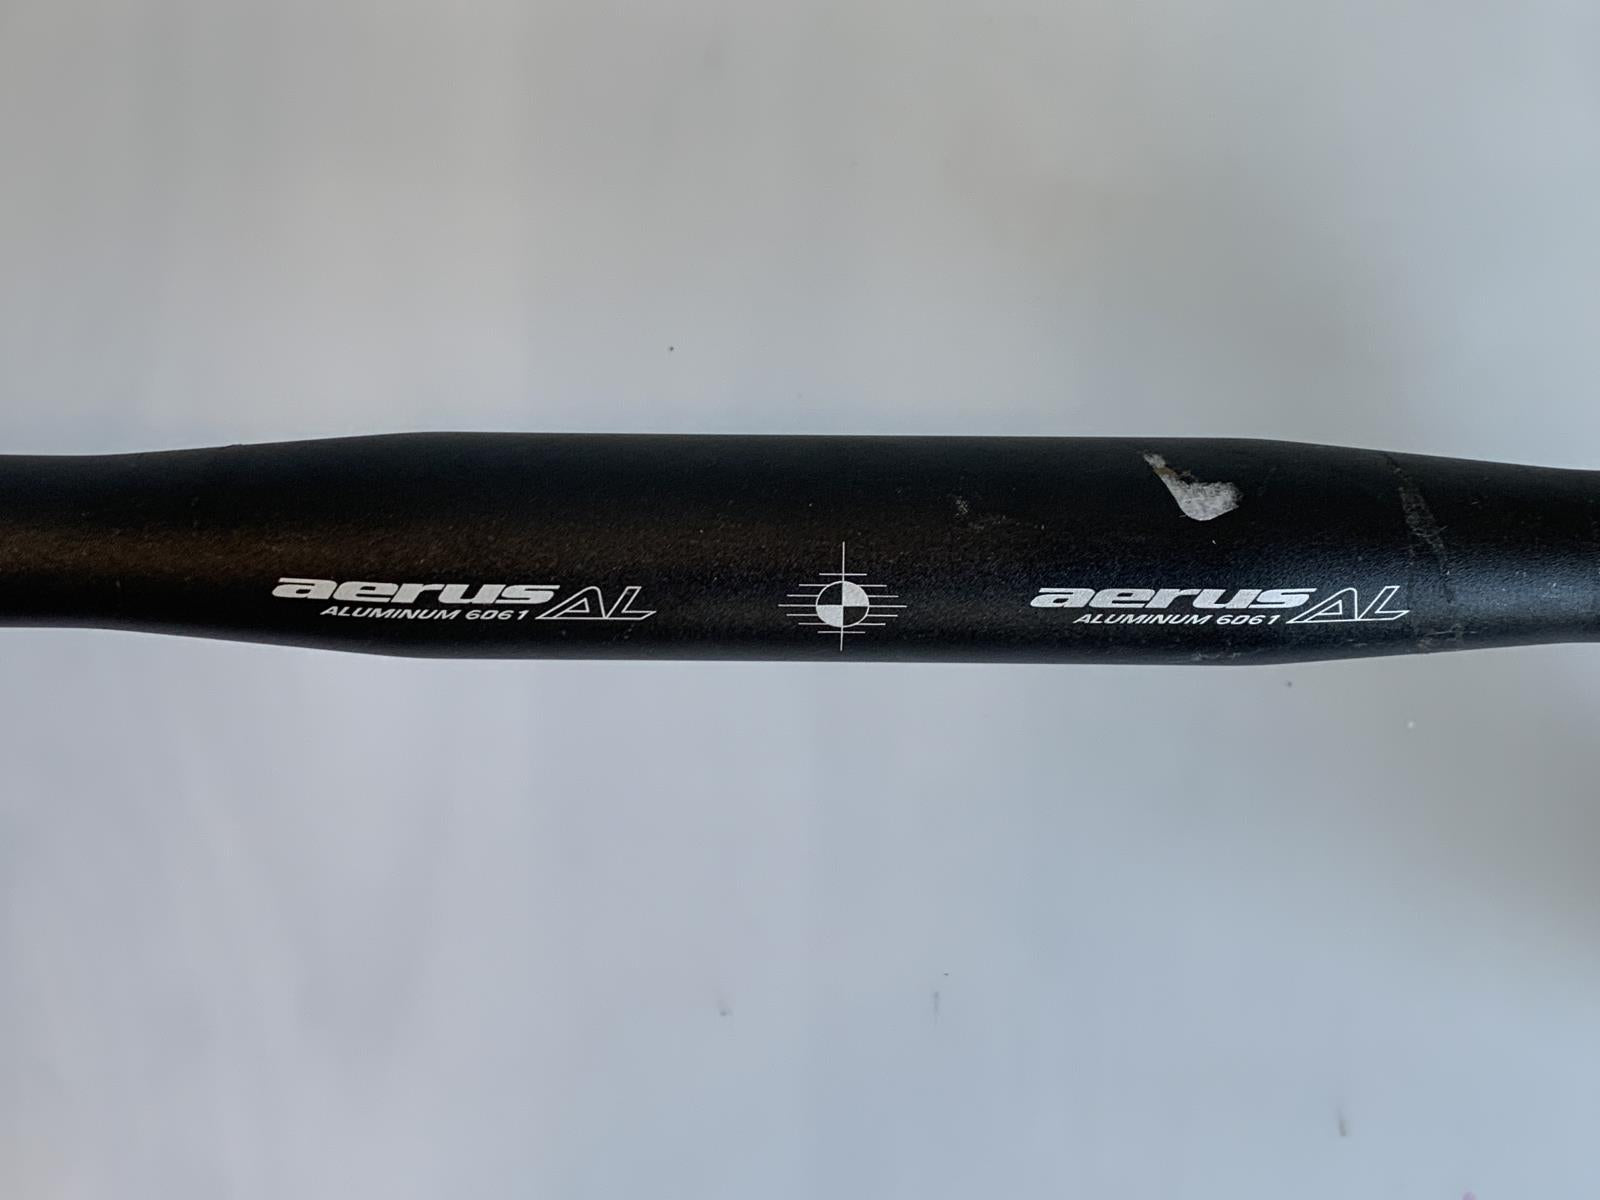 Aerus Alloy Drop Curled Road Bike Handlebar 31.8mm x 440mm Black New Take Off